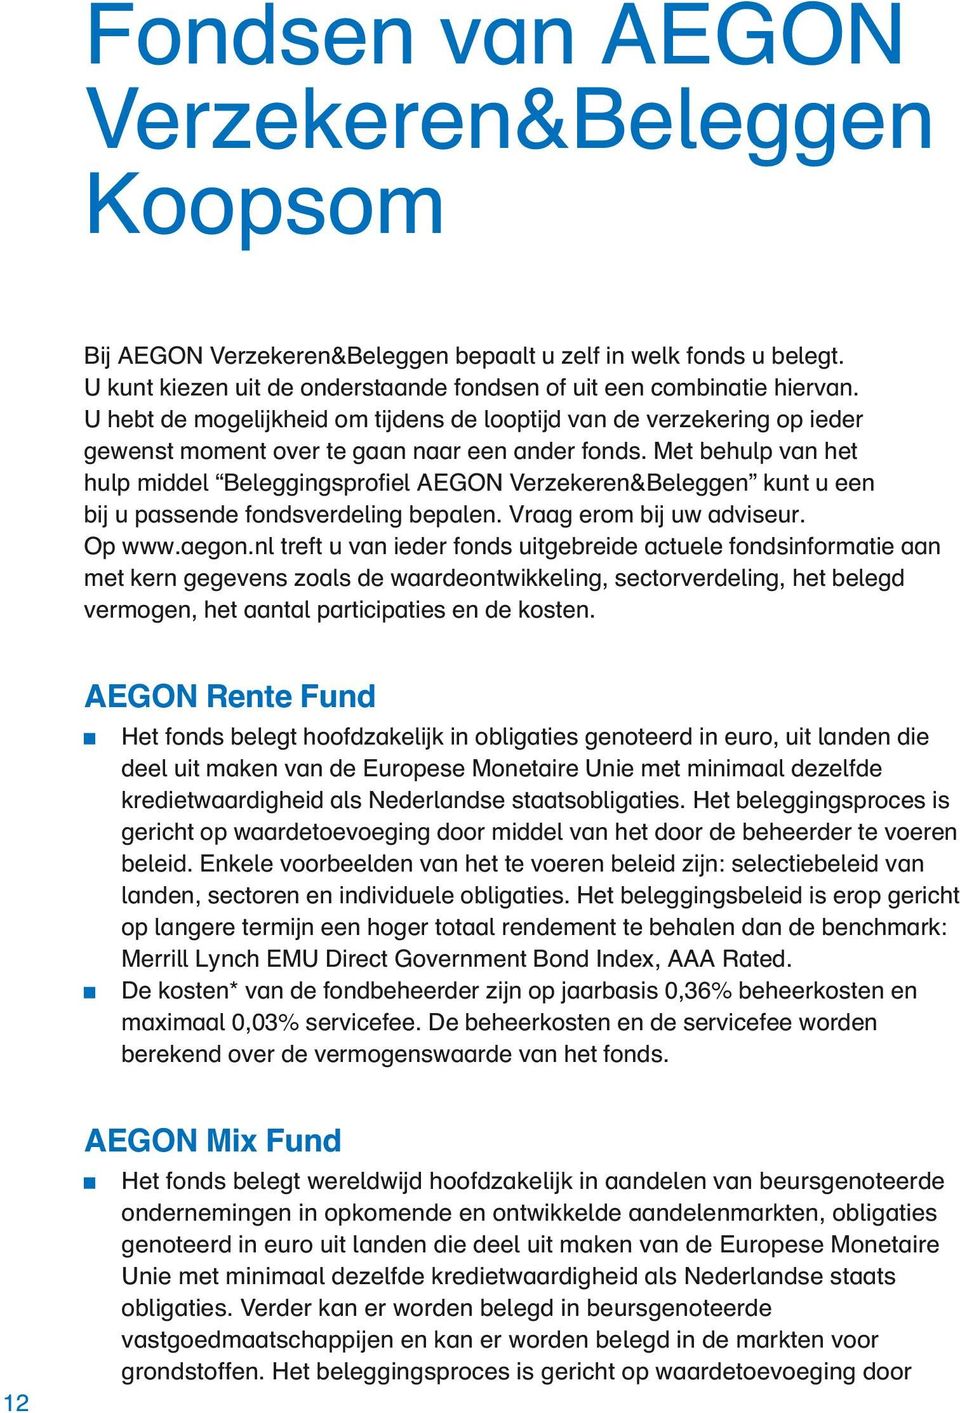 Met behulp van het hulp middel Beleggingsprofiel AEGON Verzekeren&Beleggen kunt u een bij u passende fondsverdeling bepalen. Vraag erom bij uw adviseur. Op www.aegon.